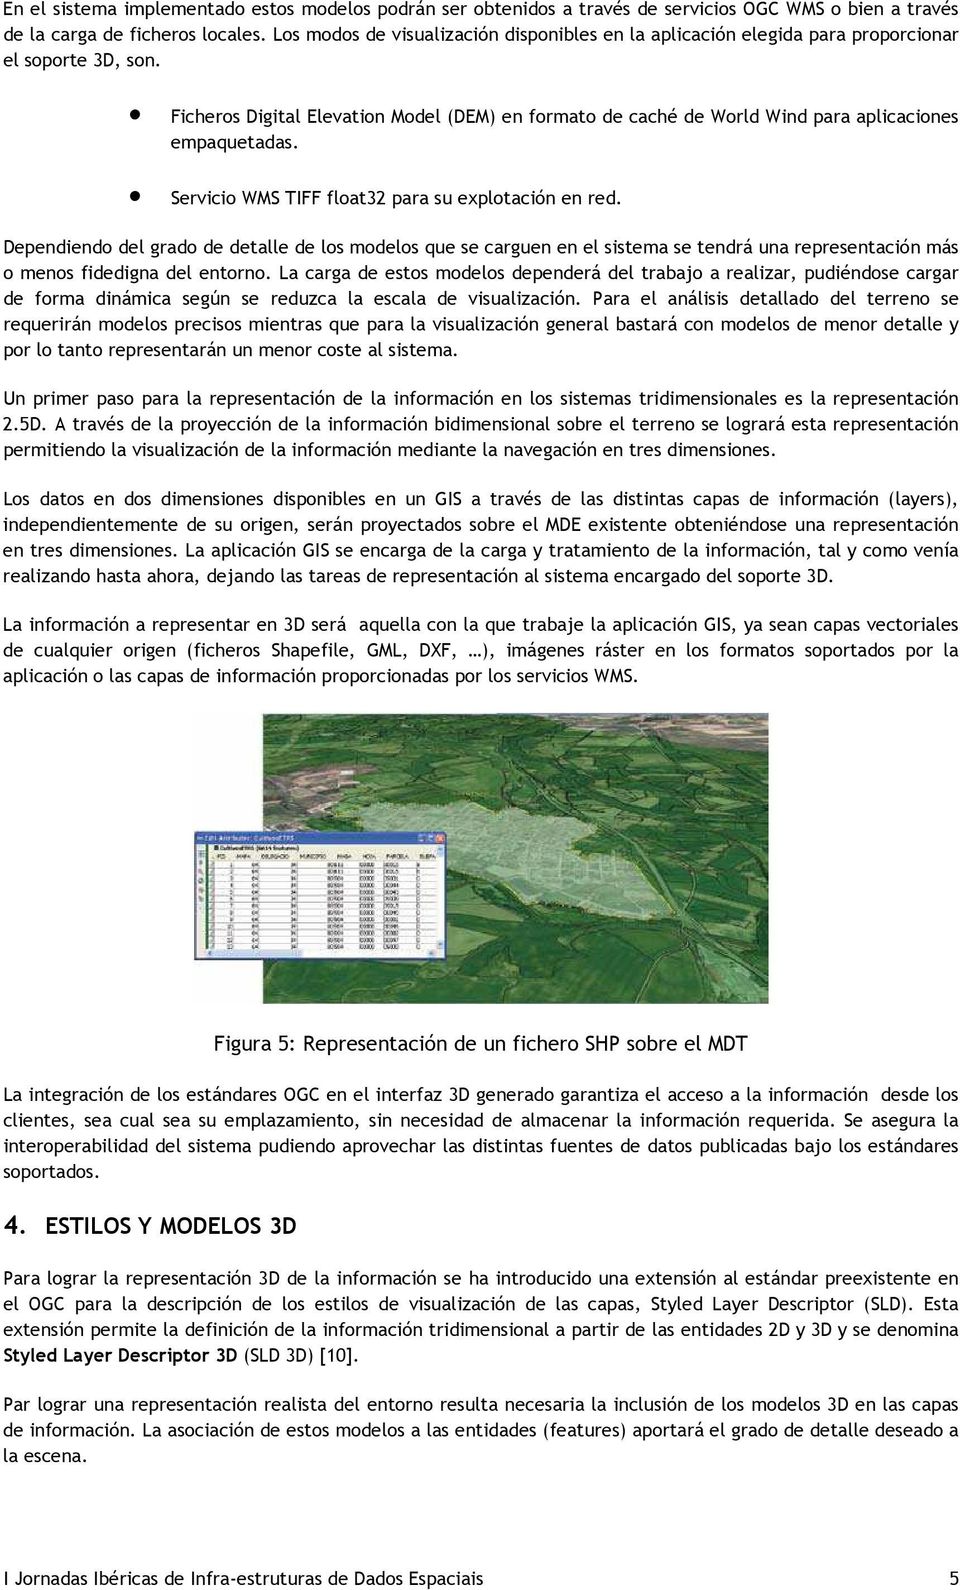 Ficheros Digital Elevation Model (DEM) en formato de caché de World Wind para aplicaciones empaquetadas. Servicio WMS TIFF float32 para su explotación en red.